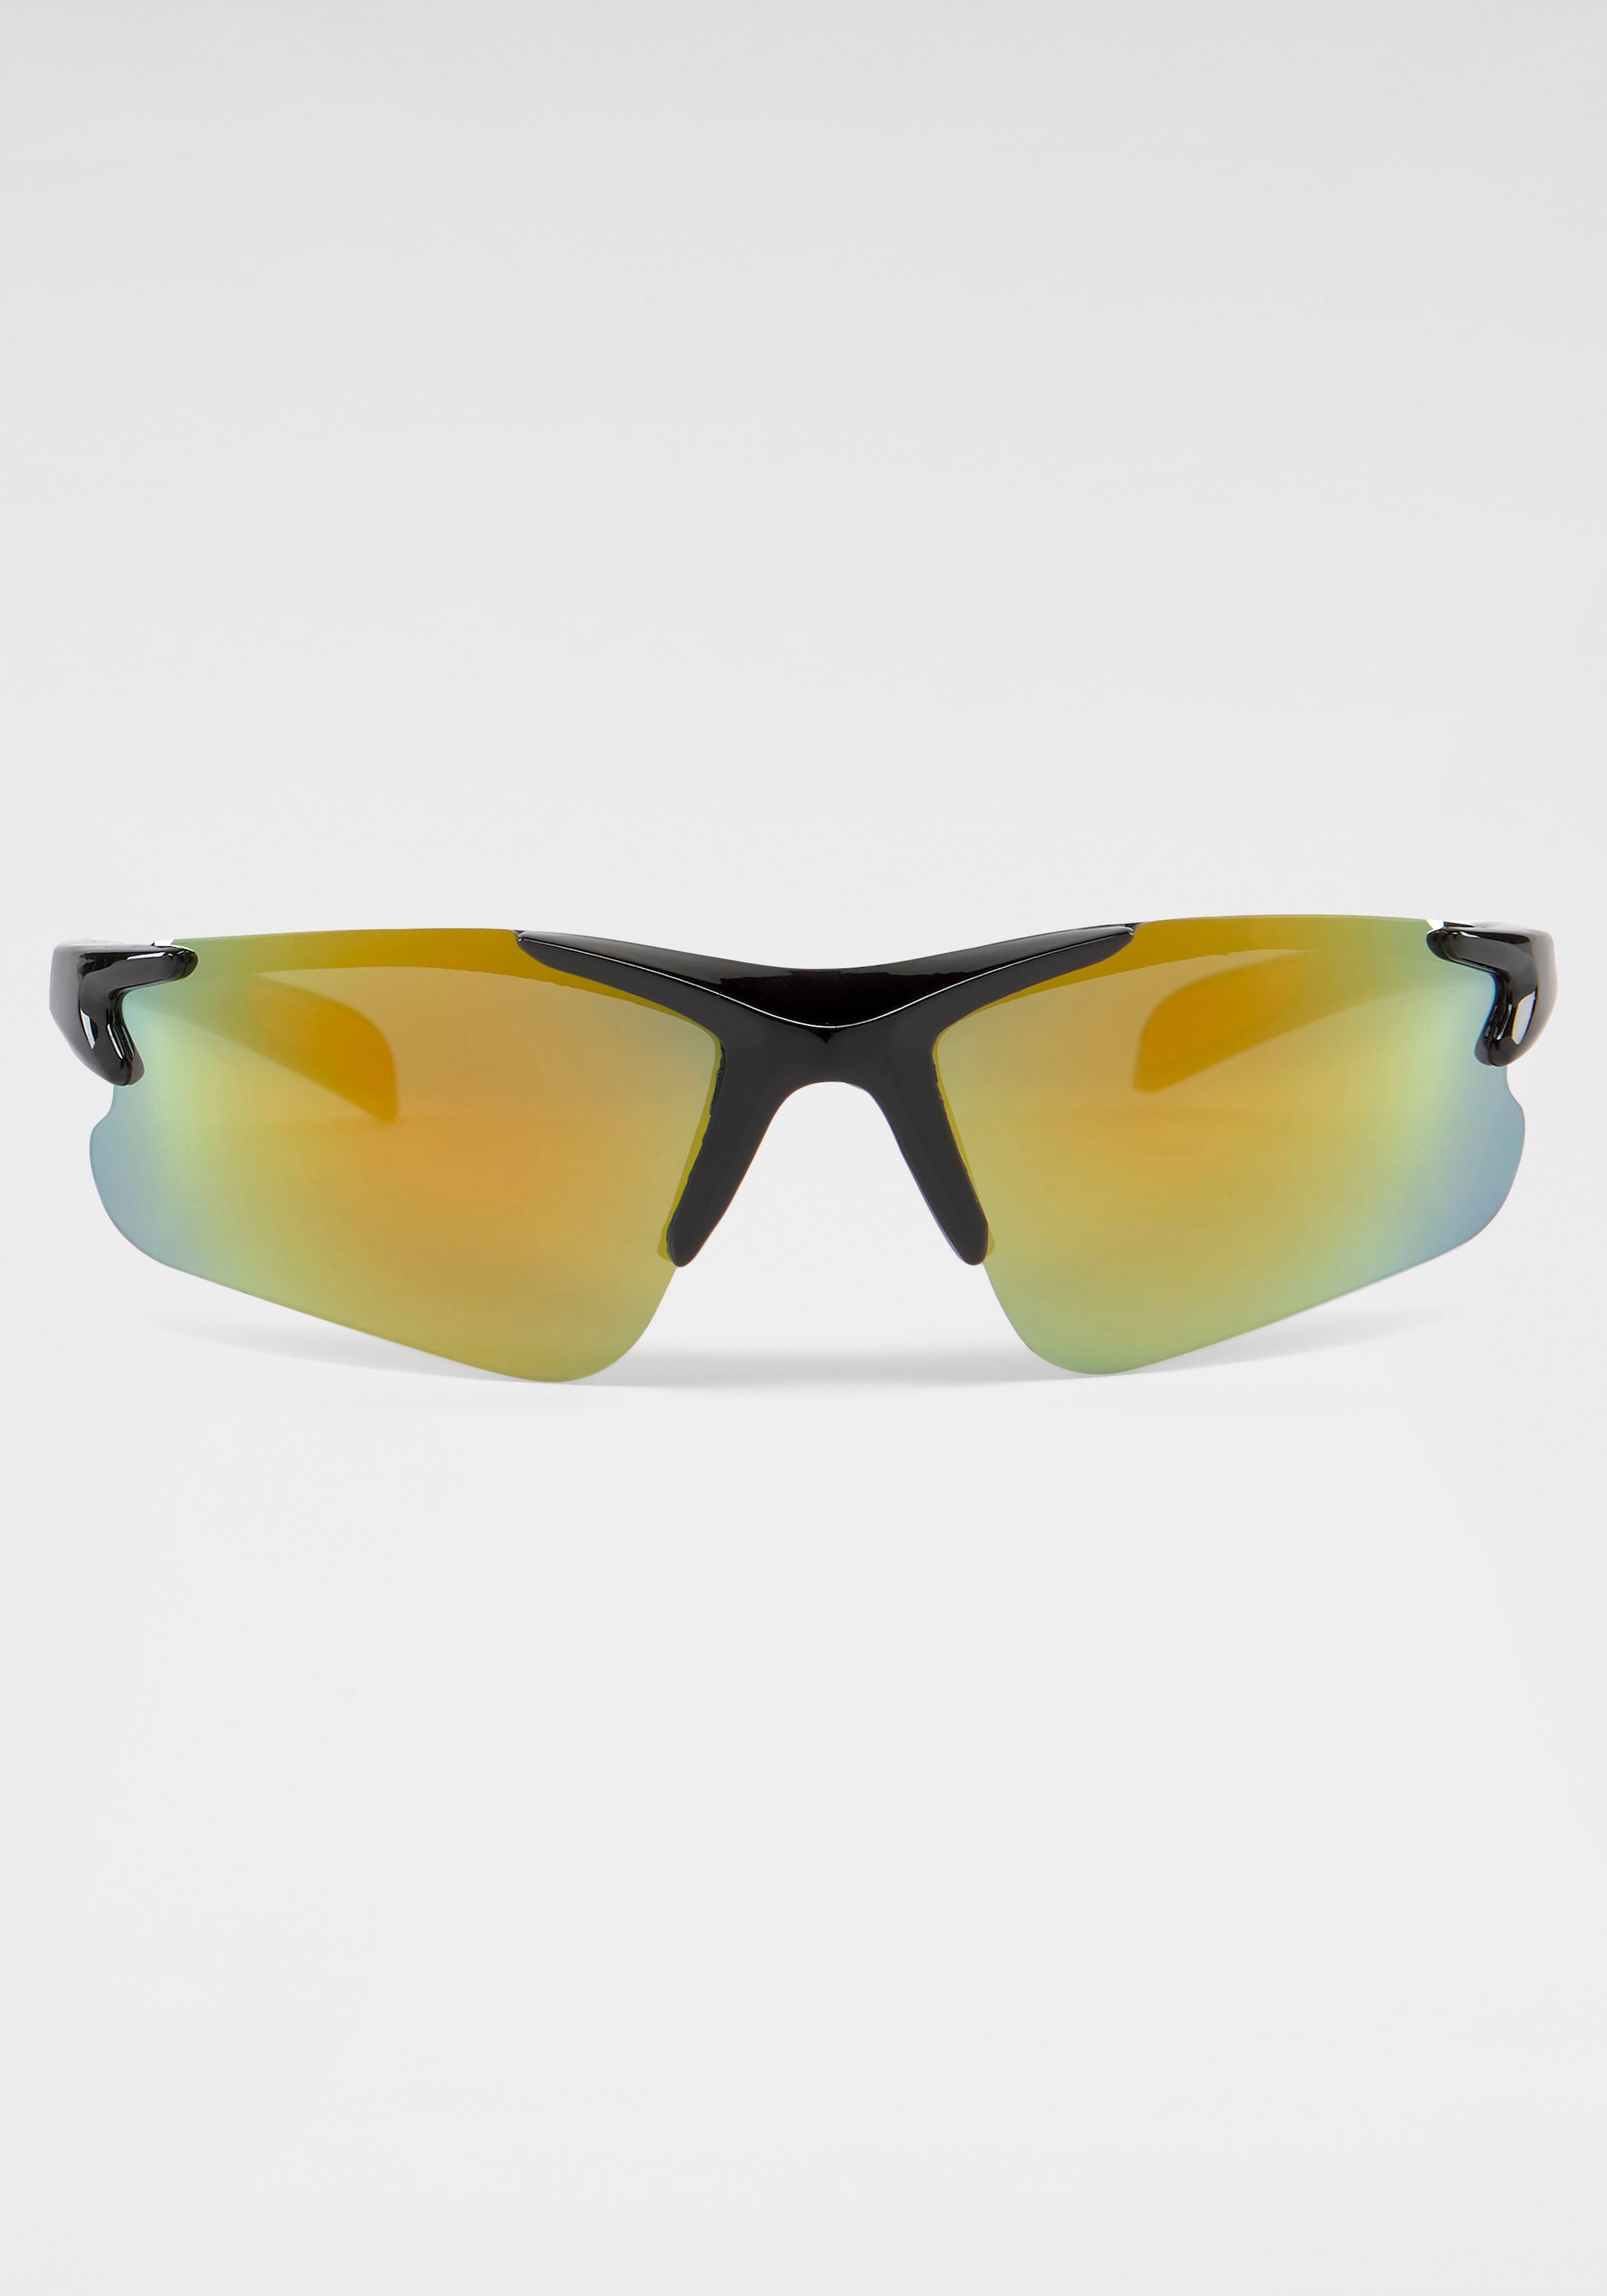 verspiegelten online Eyewear mit Gläsern Sonnenbrille, PRIMETTA kaufen